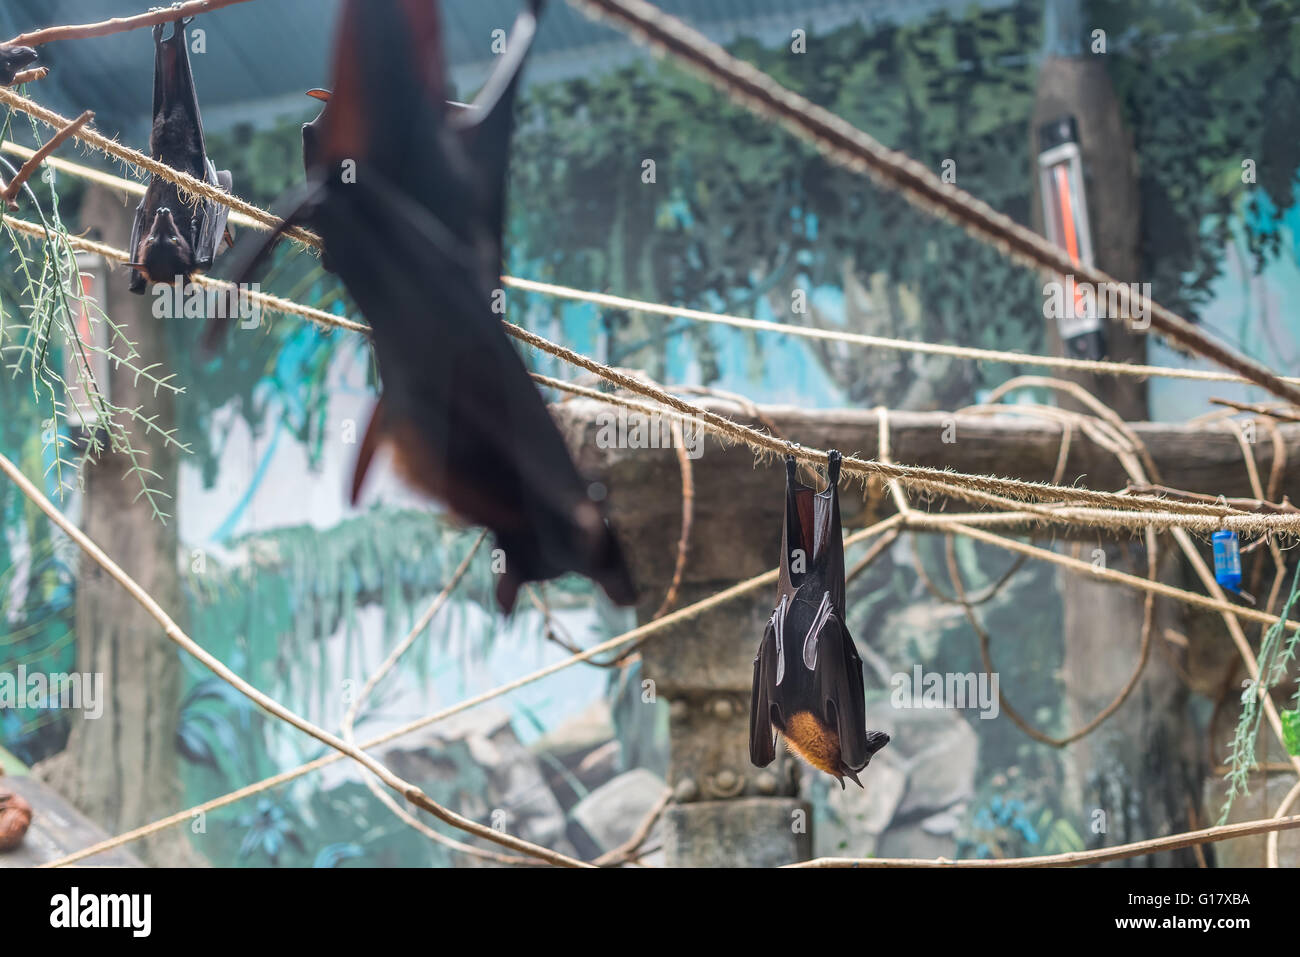 Sao Paulo, Brésil, mai 16, 2016 : chauve-souris (Pteropus vampyrus malais) suspendu à une corde avec sa tête en bas Banque D'Images